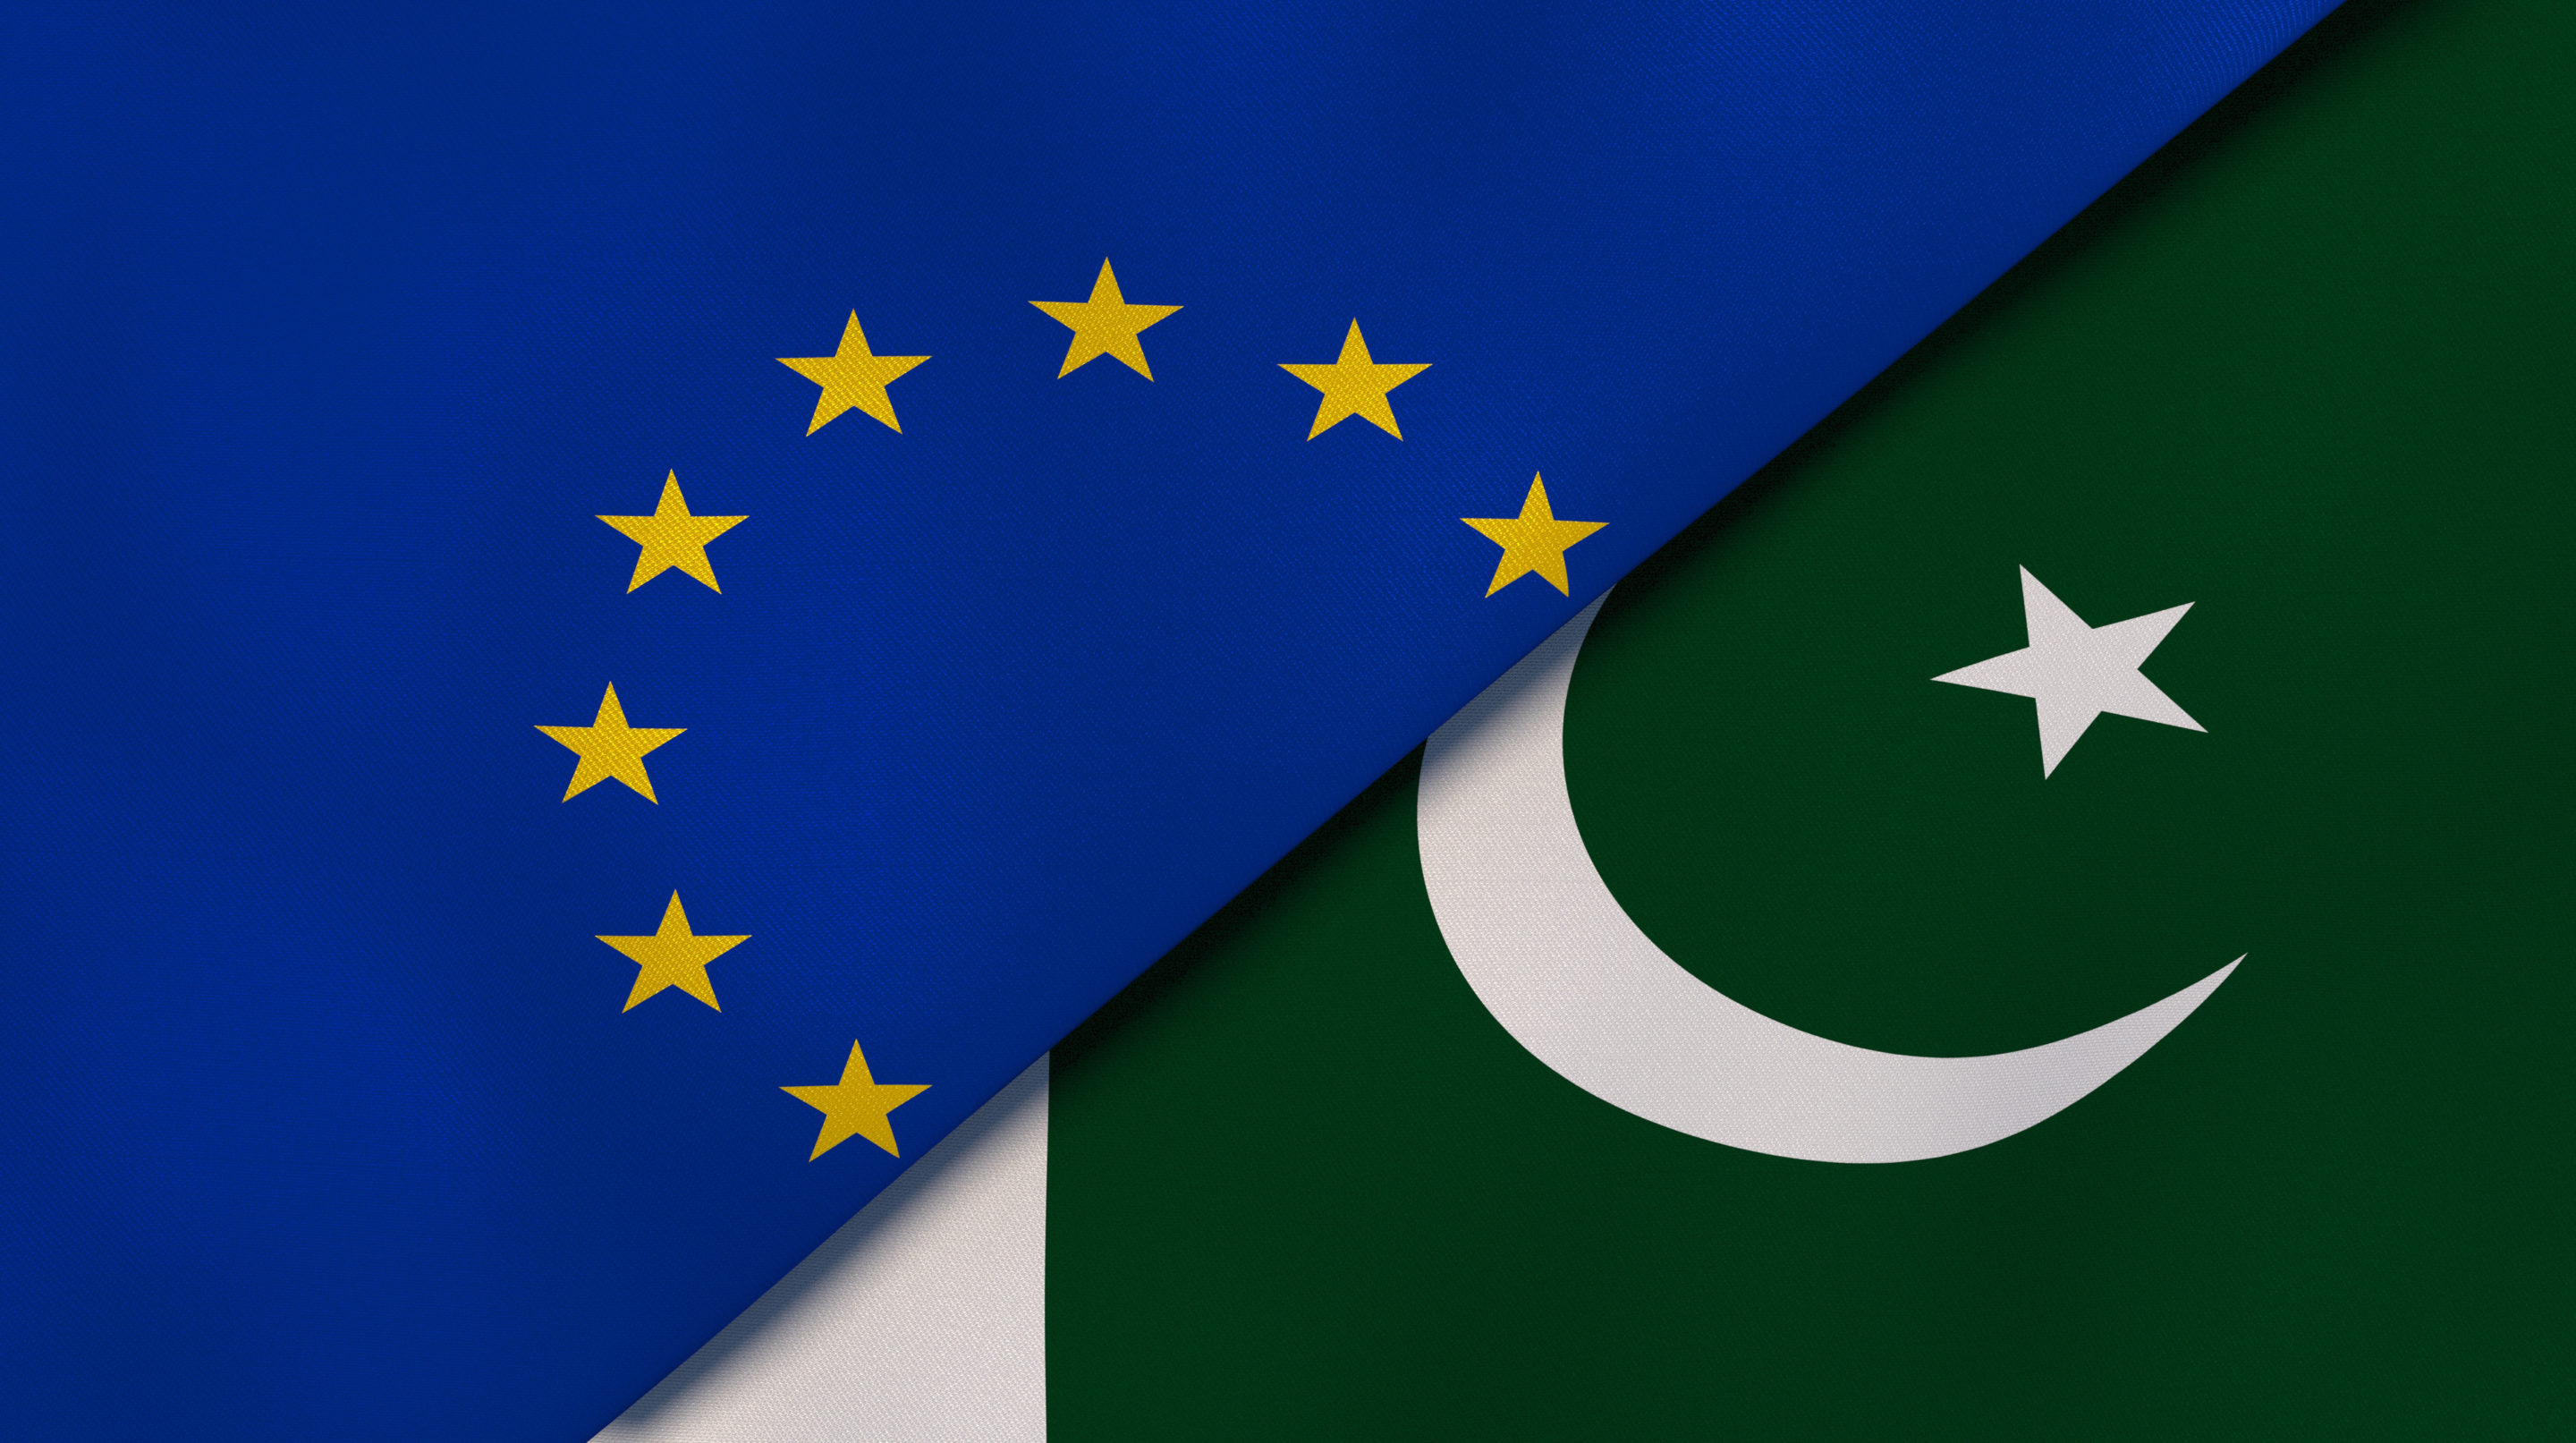 Aides au Pakistan : l’Union européenne persiste et signe